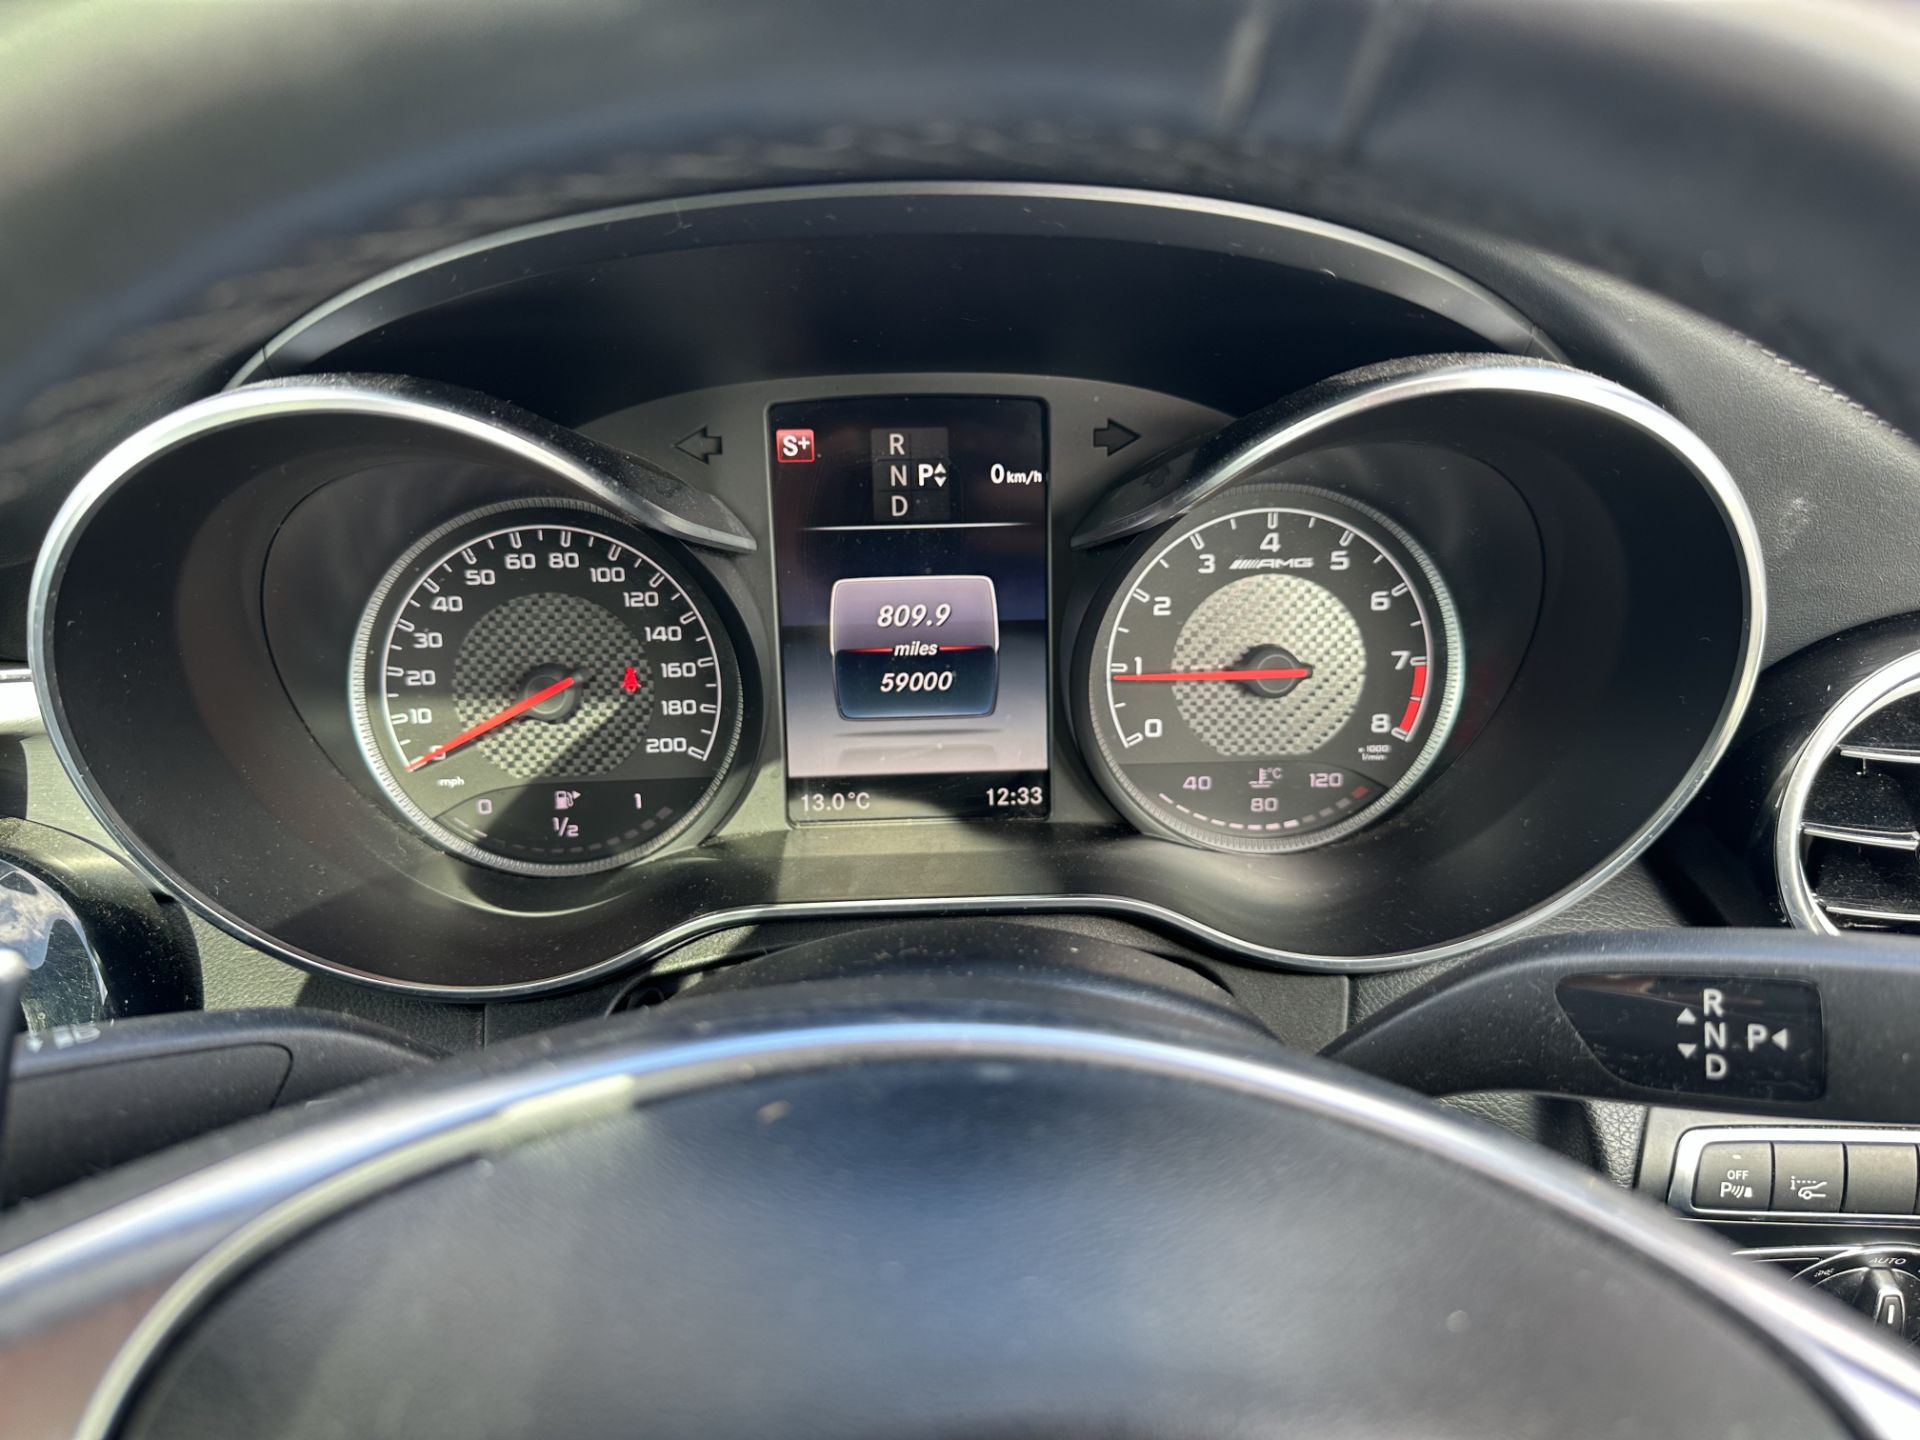 MERCEDES-BENZ C CLASS C63 Premium 2dr Coupe "Auto " (2019 Model) Automatic - 59K miles - SH PRINT - Image 17 of 21